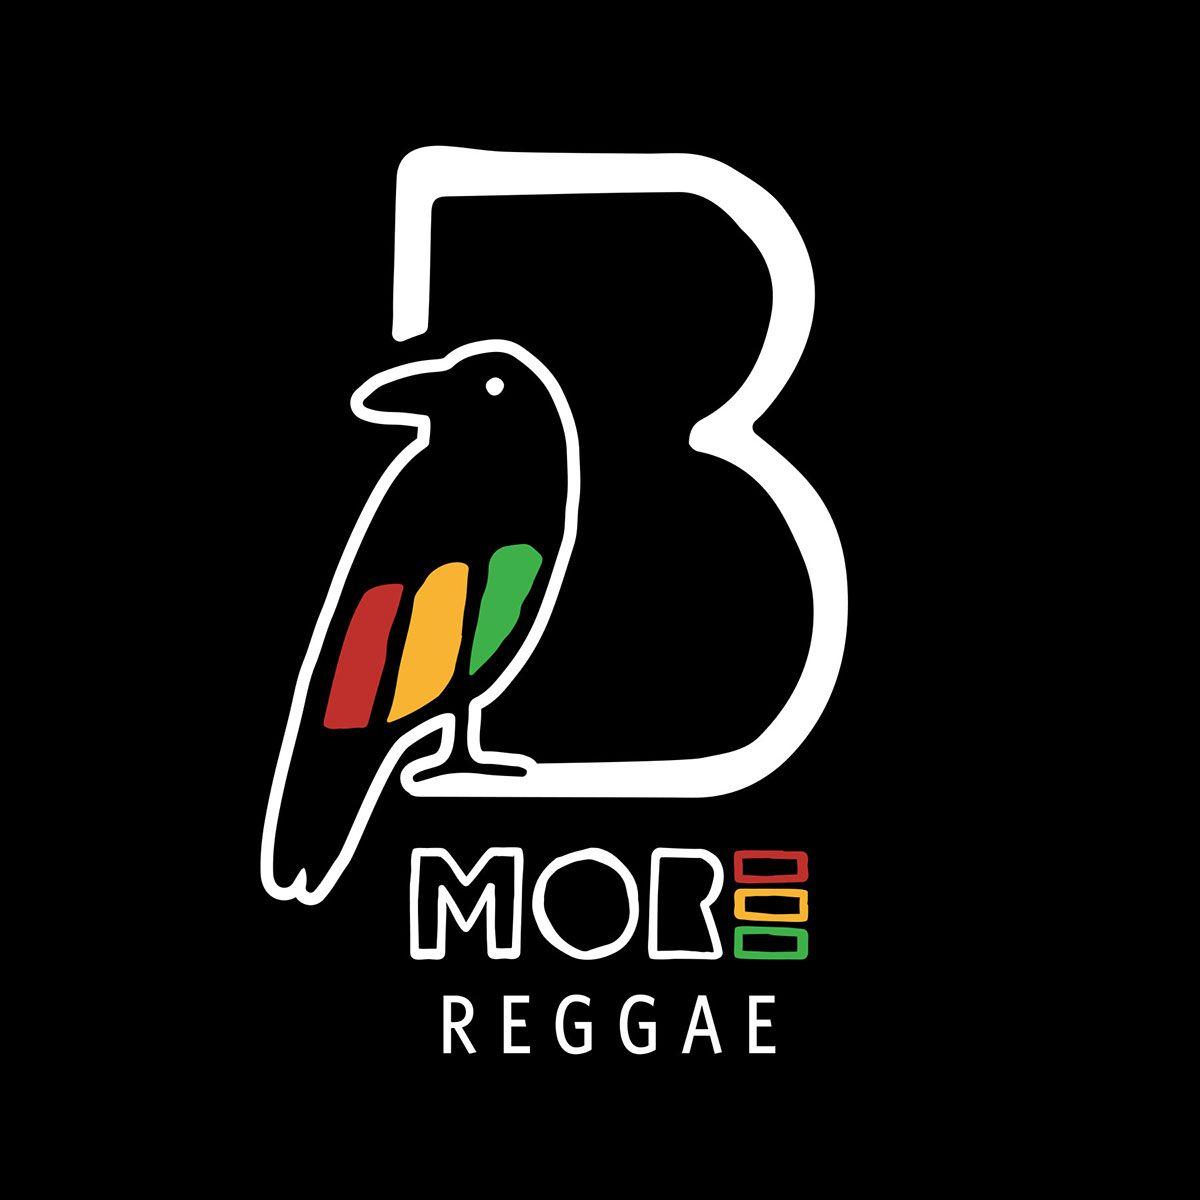 Reggae Logo - Bmore Reggae